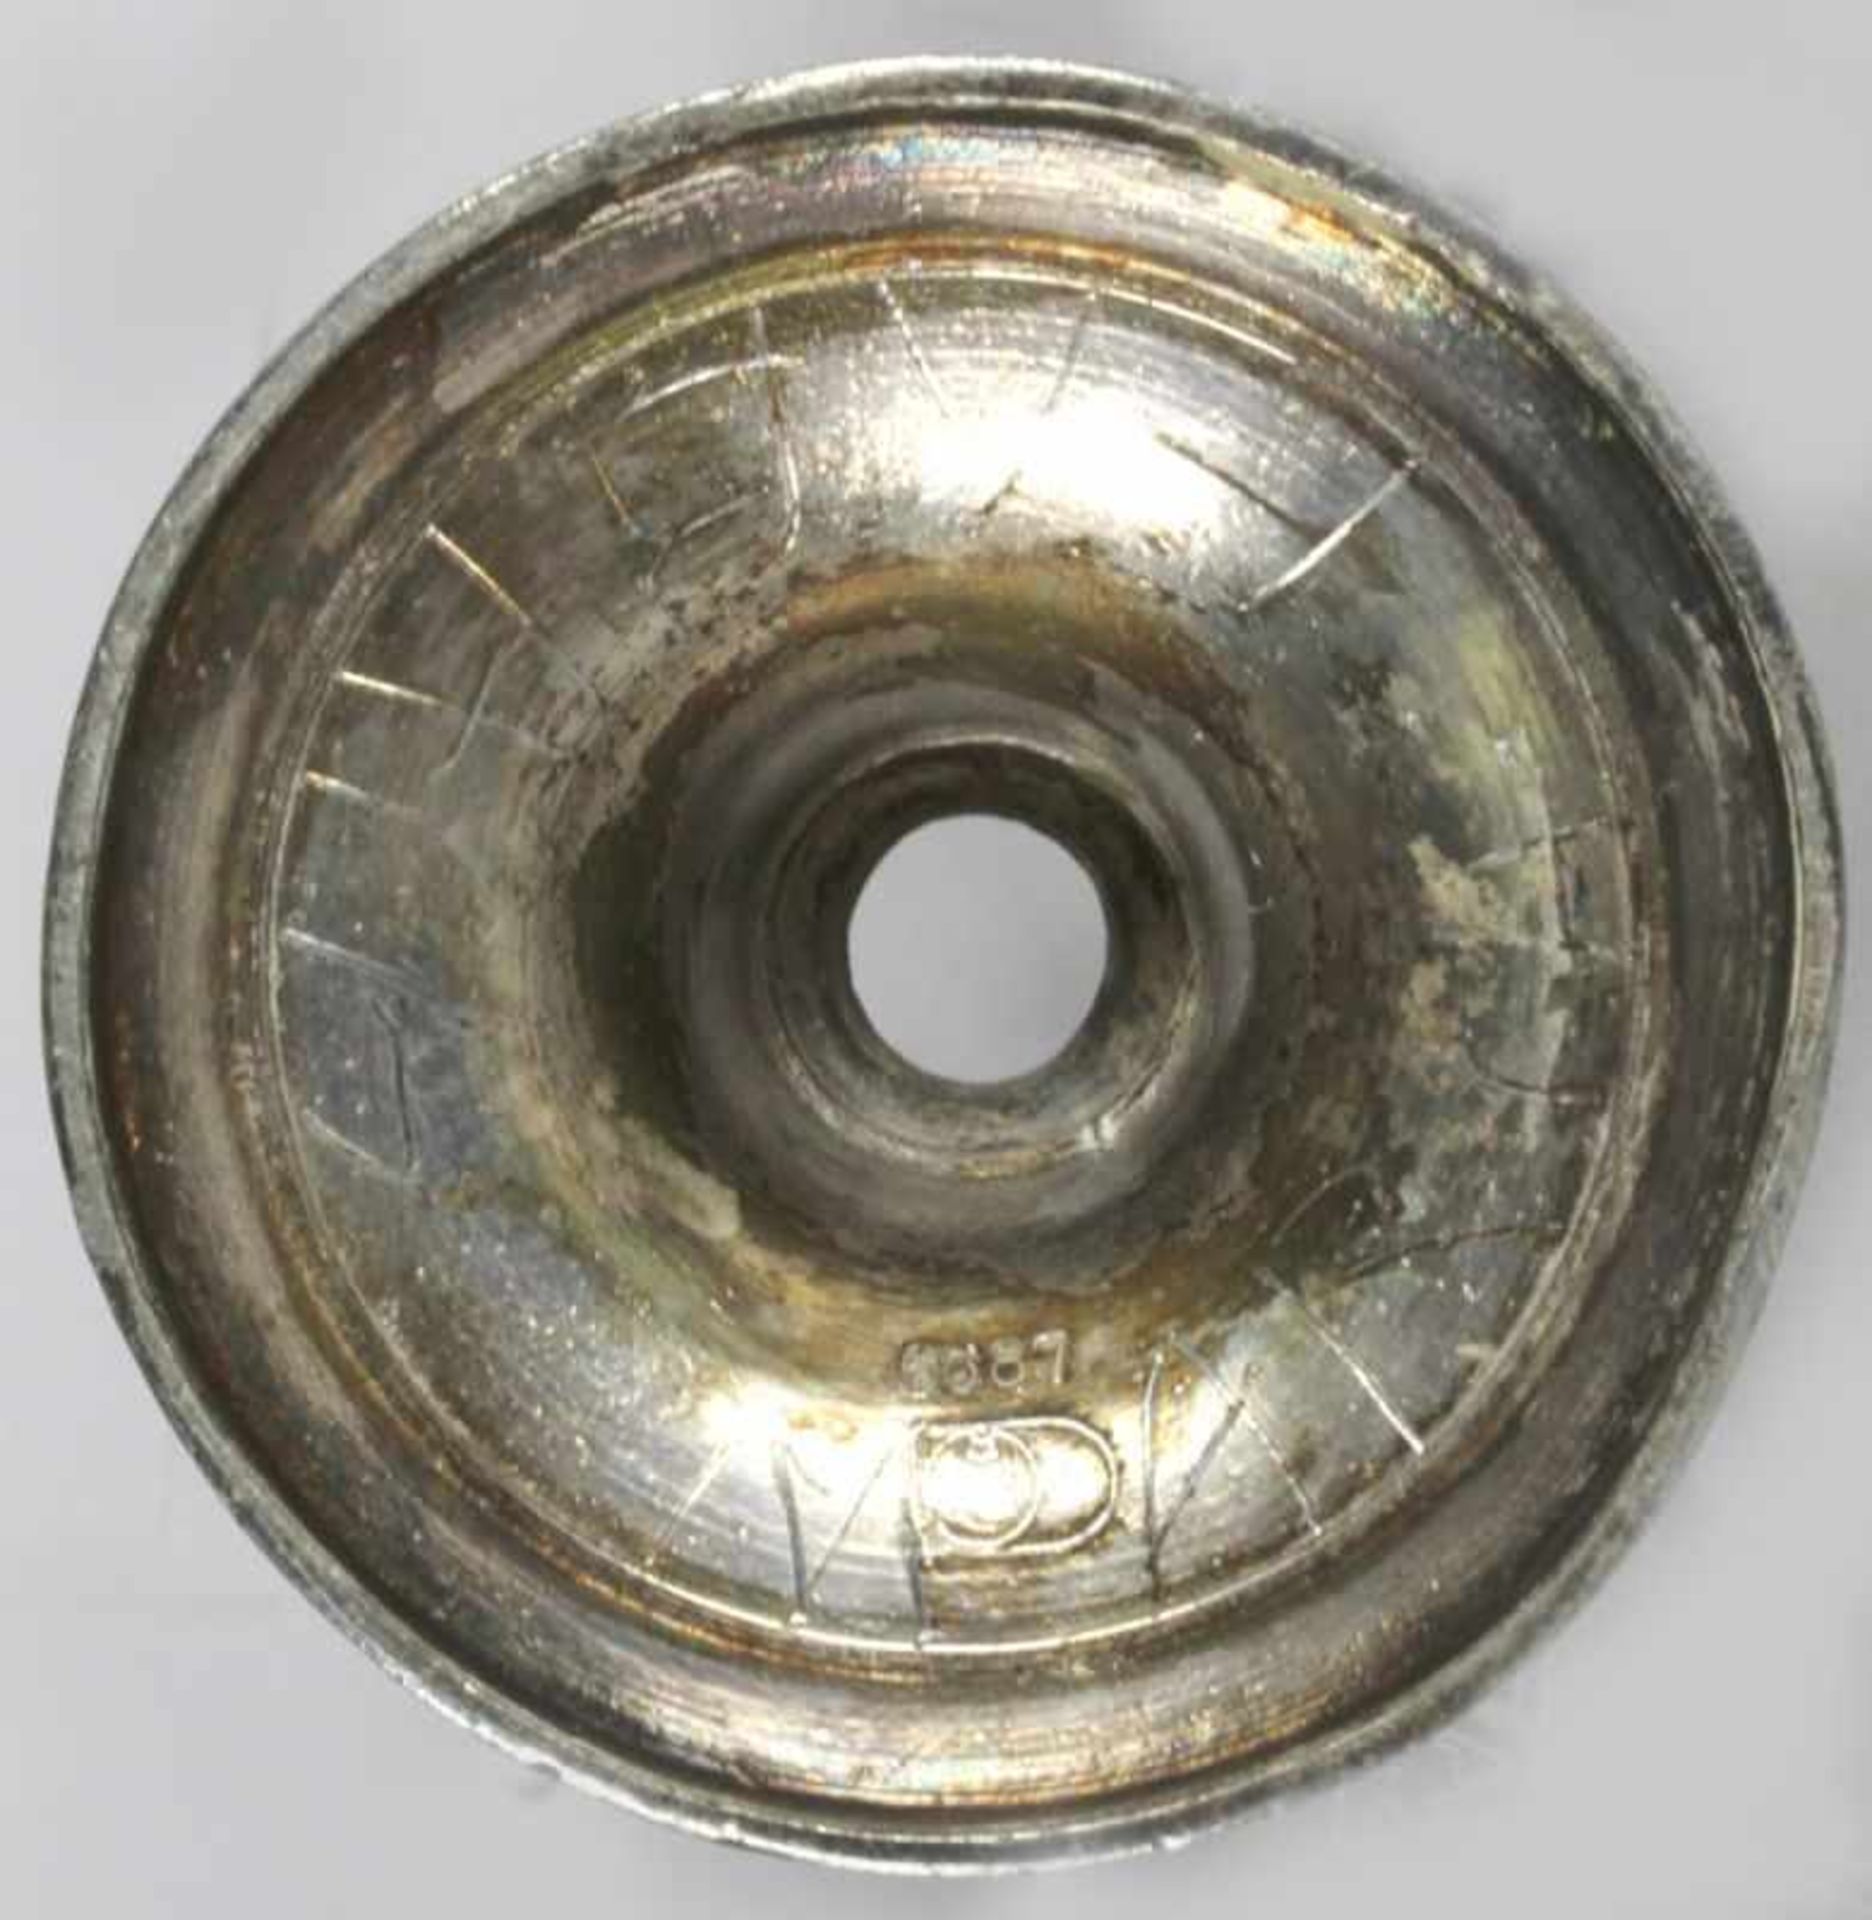 Metall-Vasenhalterung, F. W. Quist, Esslingen, um 1905, Mod.nr.: 6687, Rundstand,durchbrochen - Bild 3 aus 3